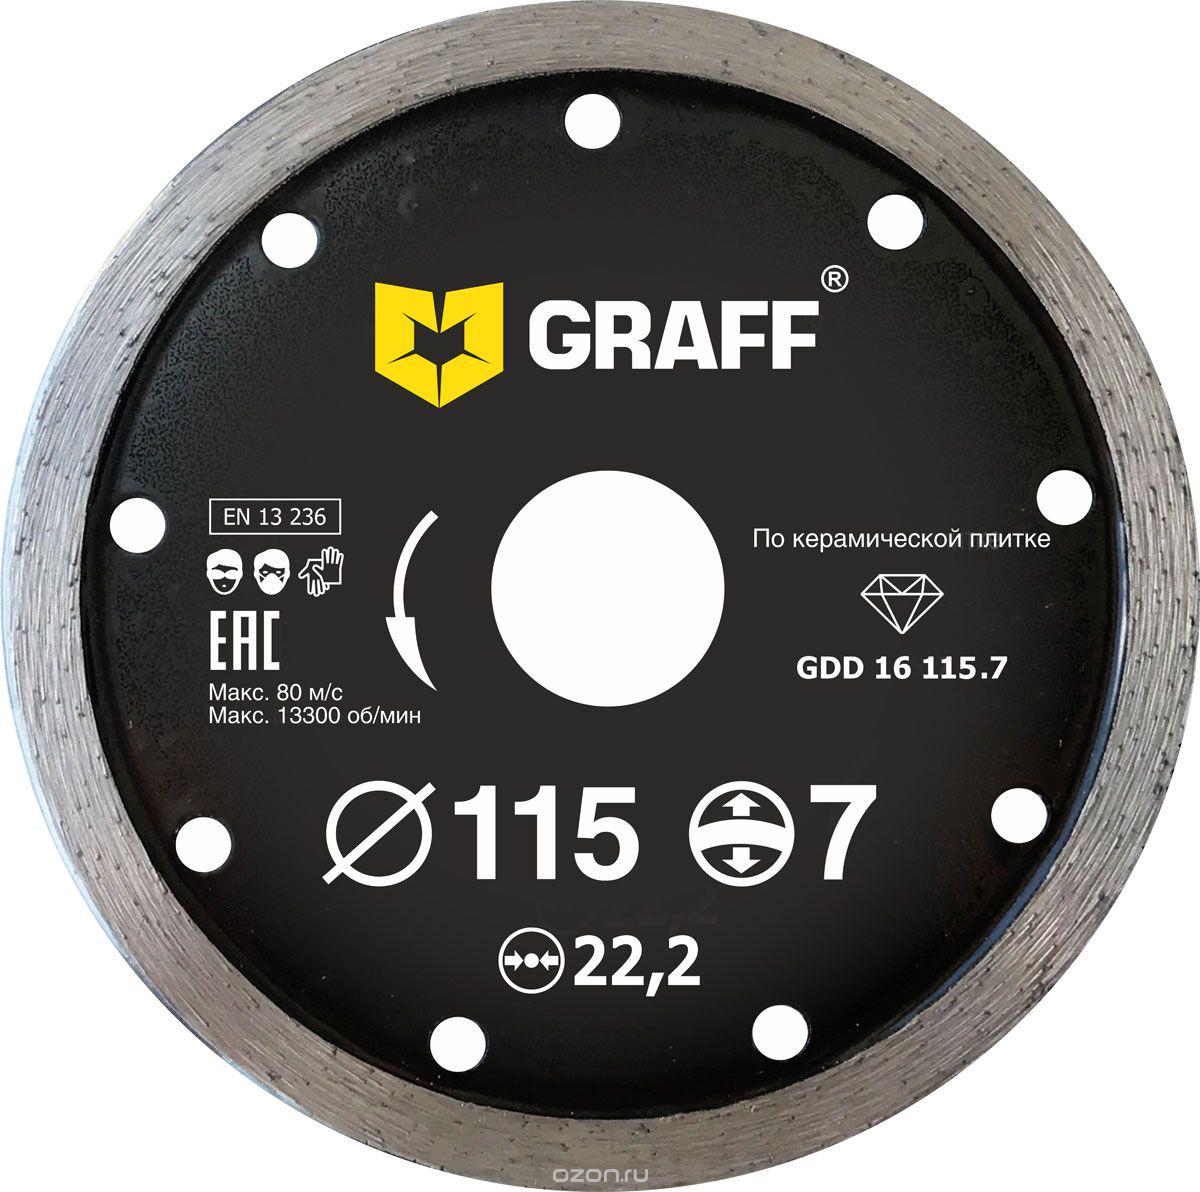 Диск отрезной алмазный GRAFF (GRAFF GDD 16 115.7) Ф115х22мм по керамике отрезной алмазный диск по керамической плитке керамограниту бизон